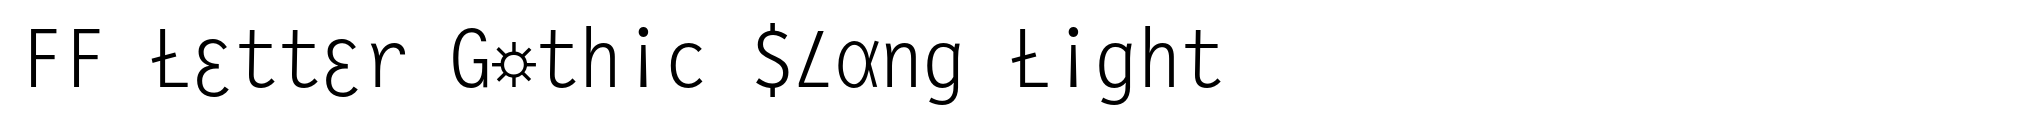 FF Letter Gothic Slang Light image